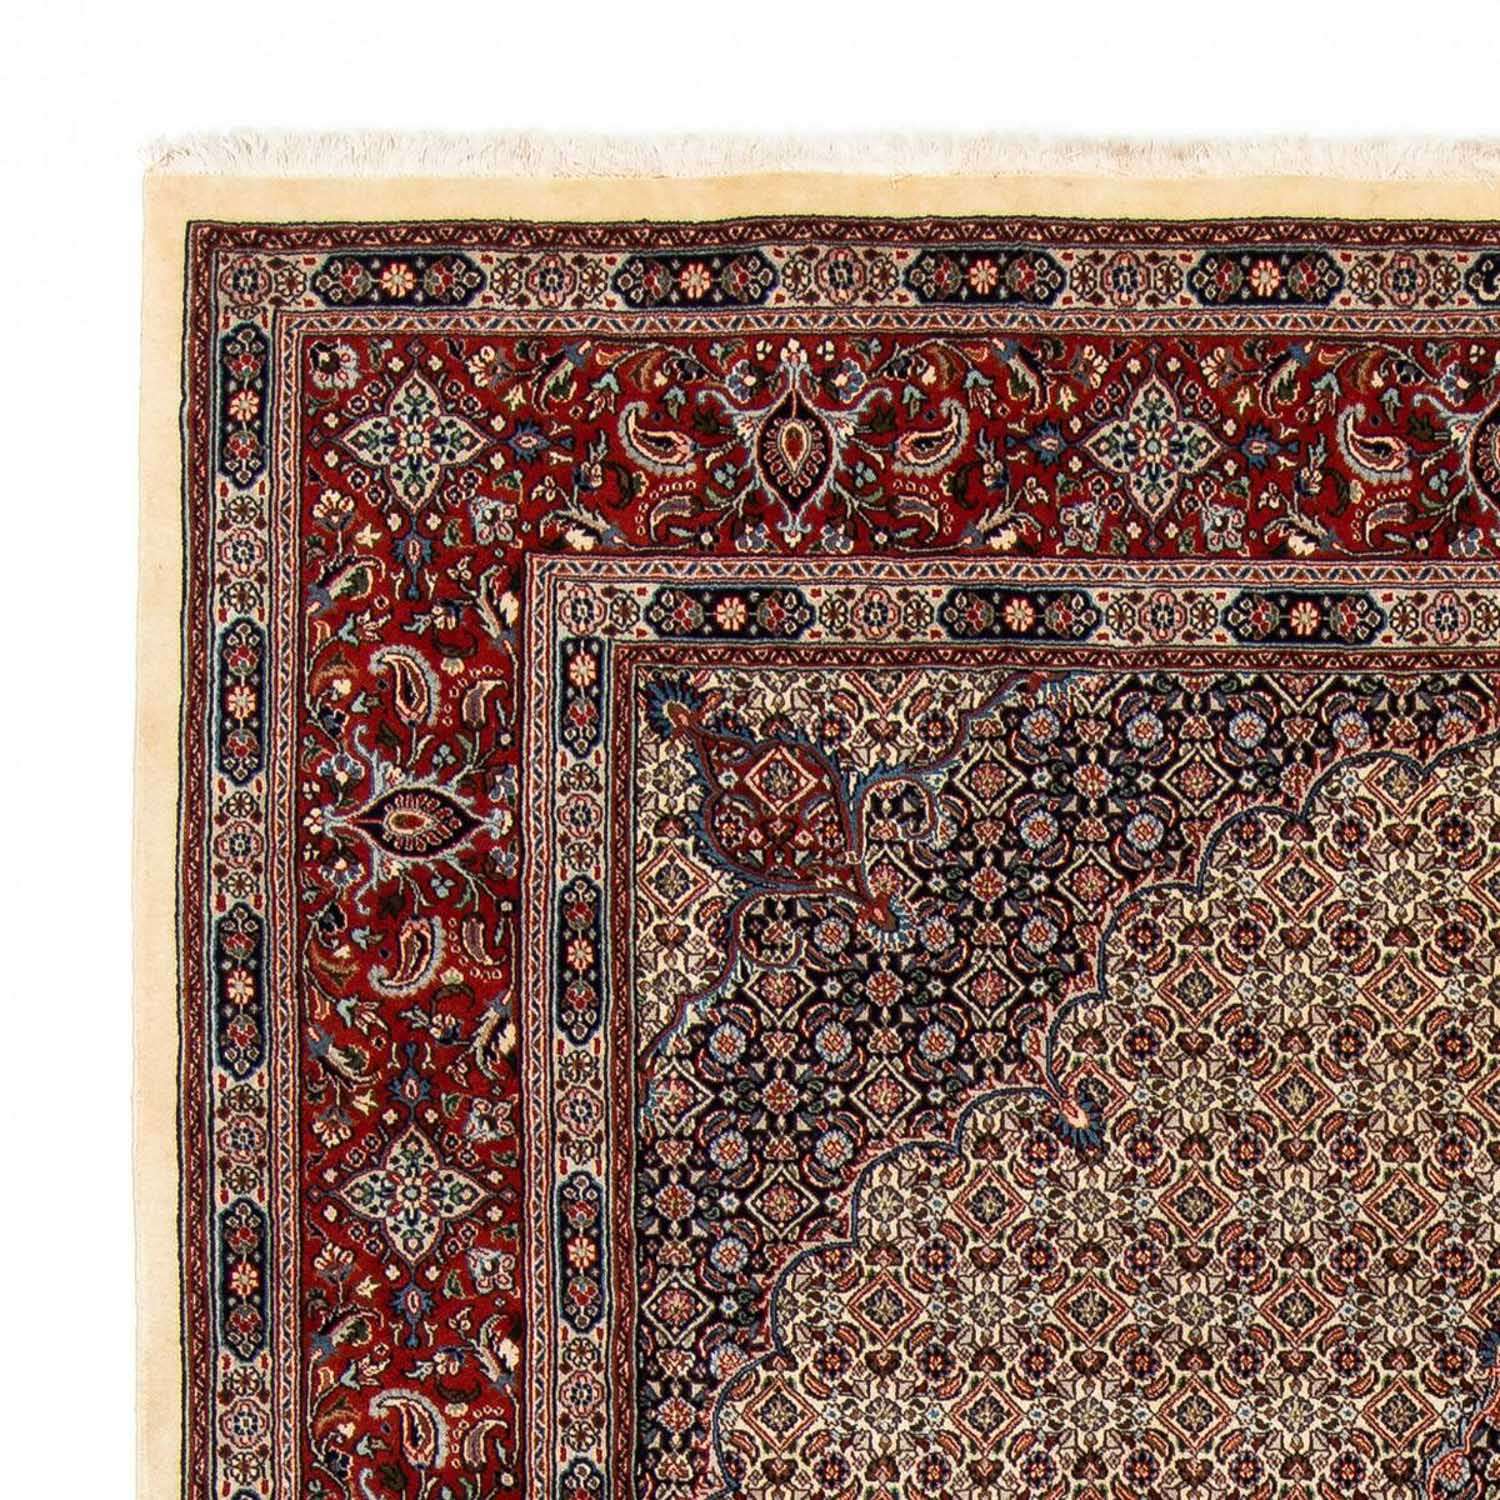 Dywan perski - Klasyczny - 294 x 204 cm - beżowy